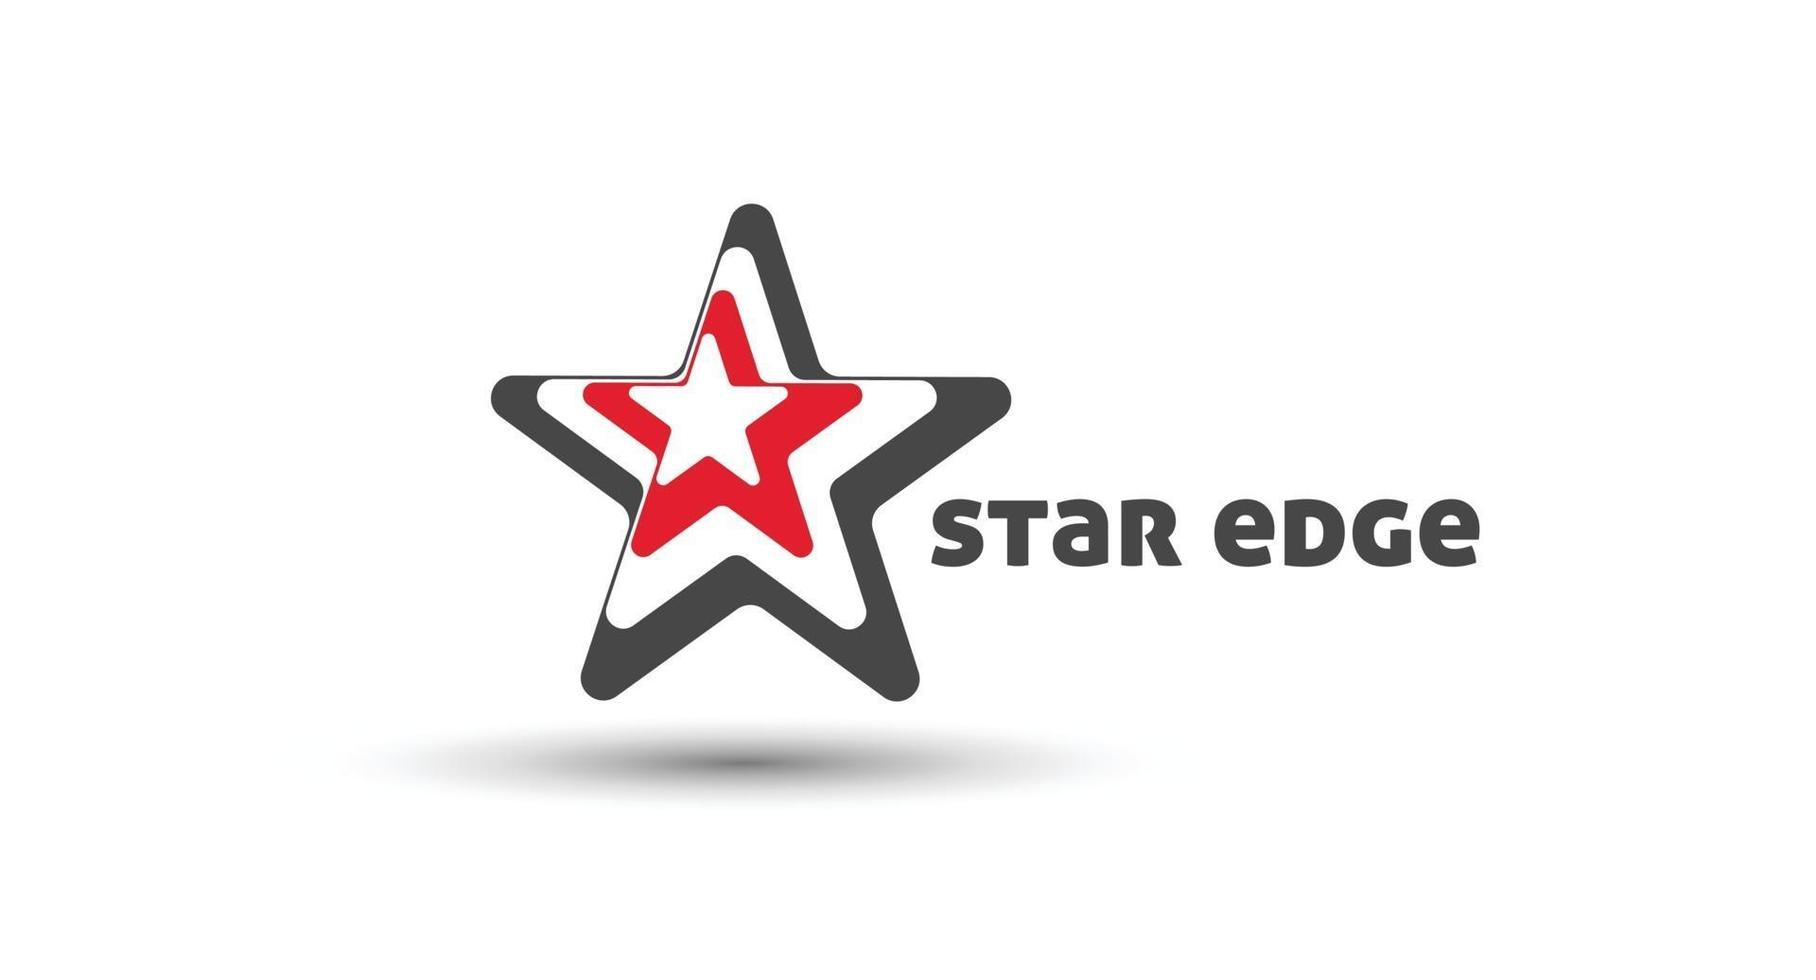 star edge branding identity företags vektor logo design.